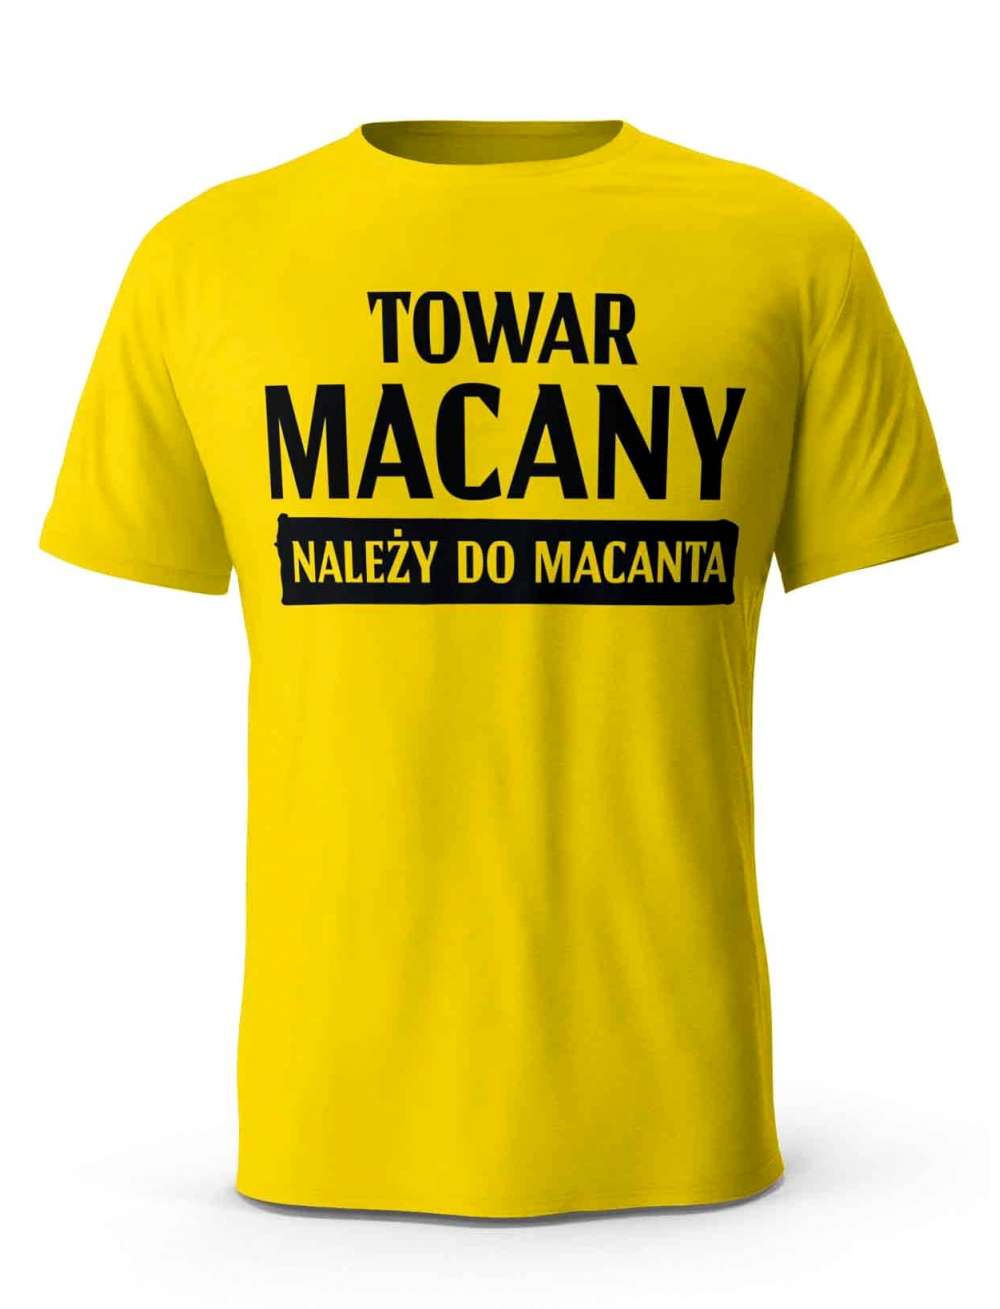 Koszulka Towar Macany Należy Do Macanta, T-shirt Dla Mężczyzny